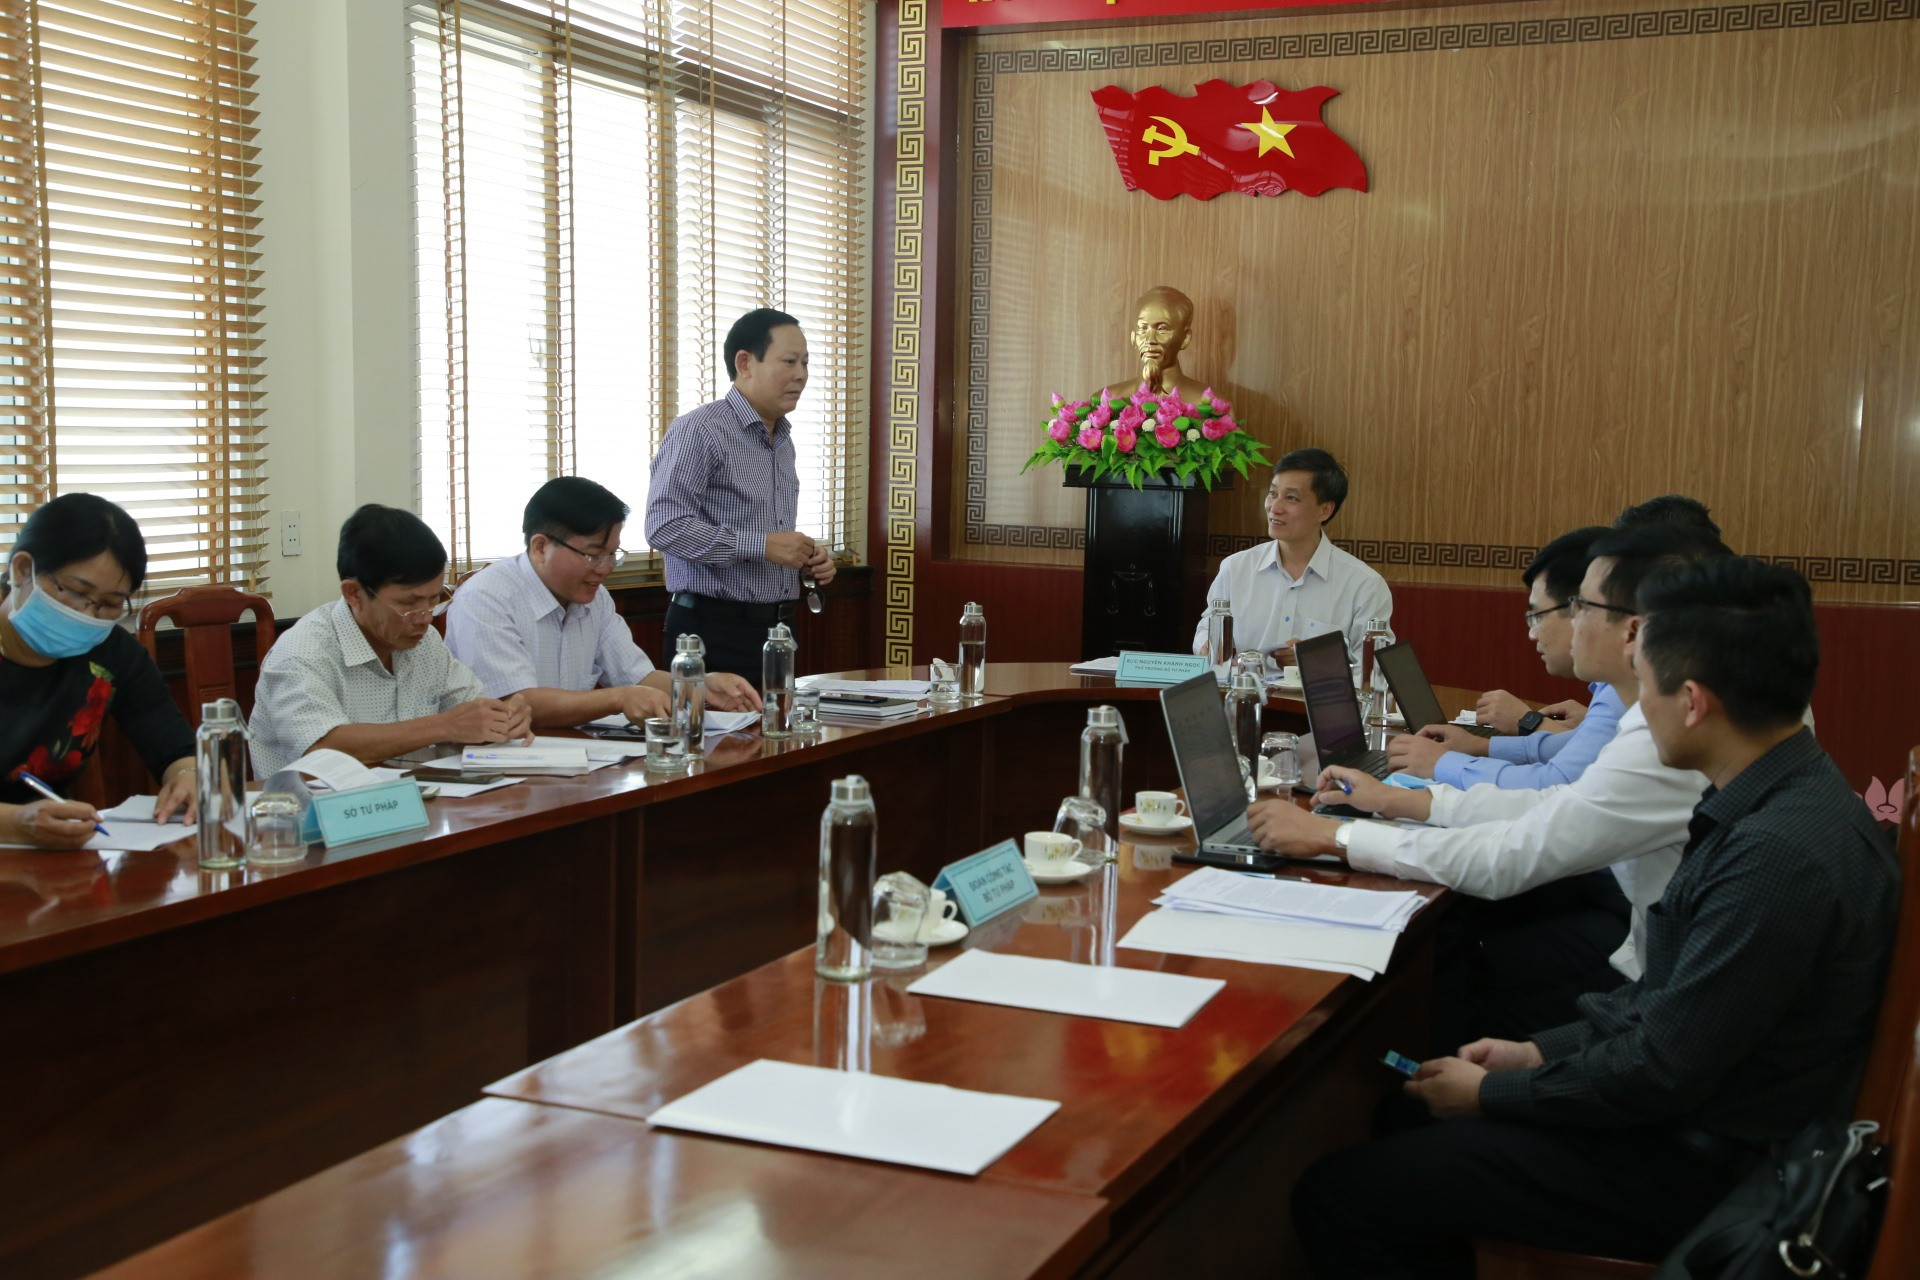 Lãnh đạo Sở Tư pháp báo cáo các nội dung công tác tại buổi làm việc với Thứ trưởng Bộ Tư pháp Nguyễn Khánh Ngọc. Ảnh: T.C